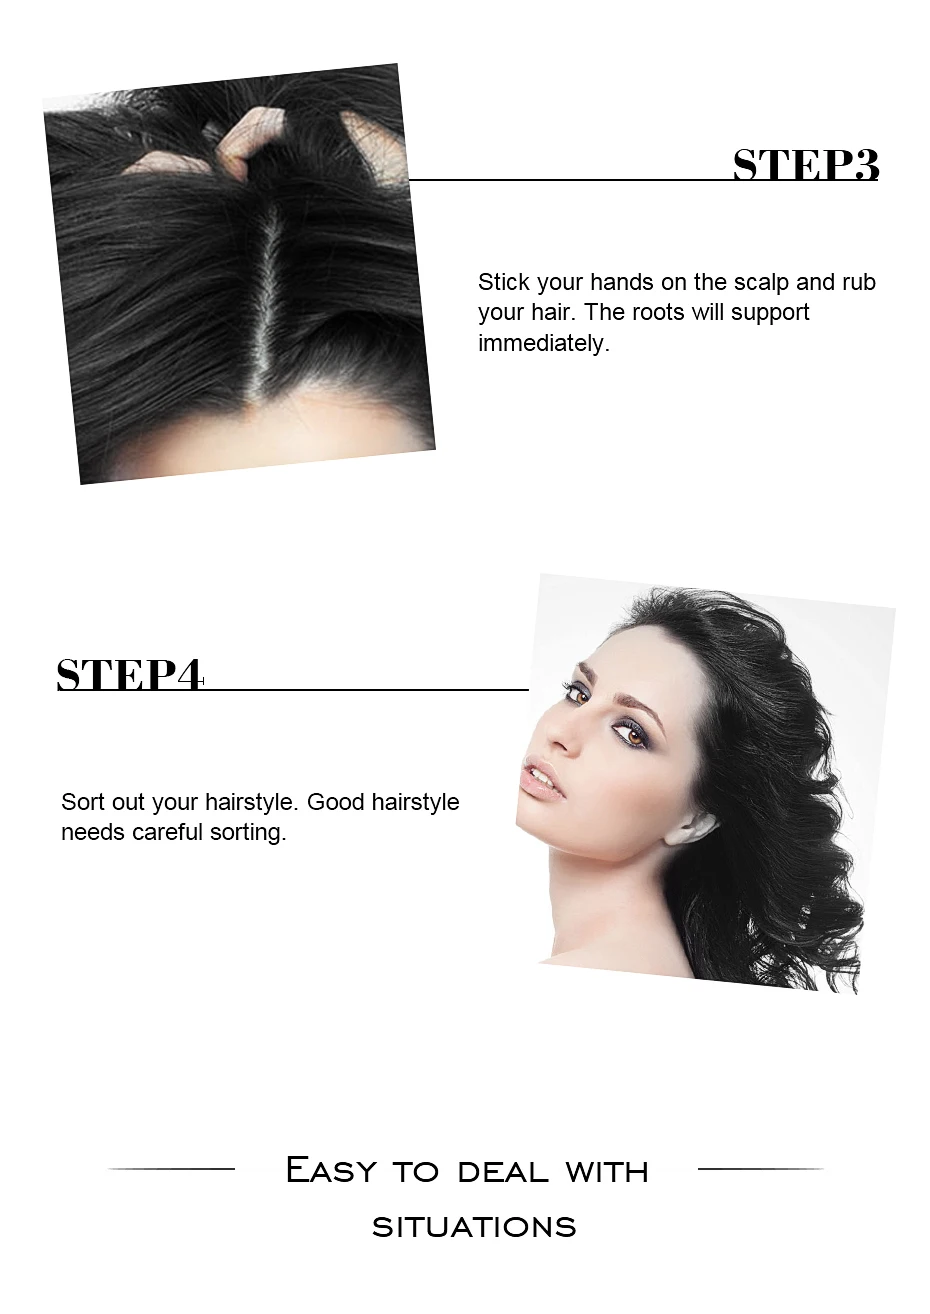 12 шт. OSIS 10 г унисекс Hairspray Dust It порошок для волос/матирующая пудра/завершить дизайн волос гель для укладки